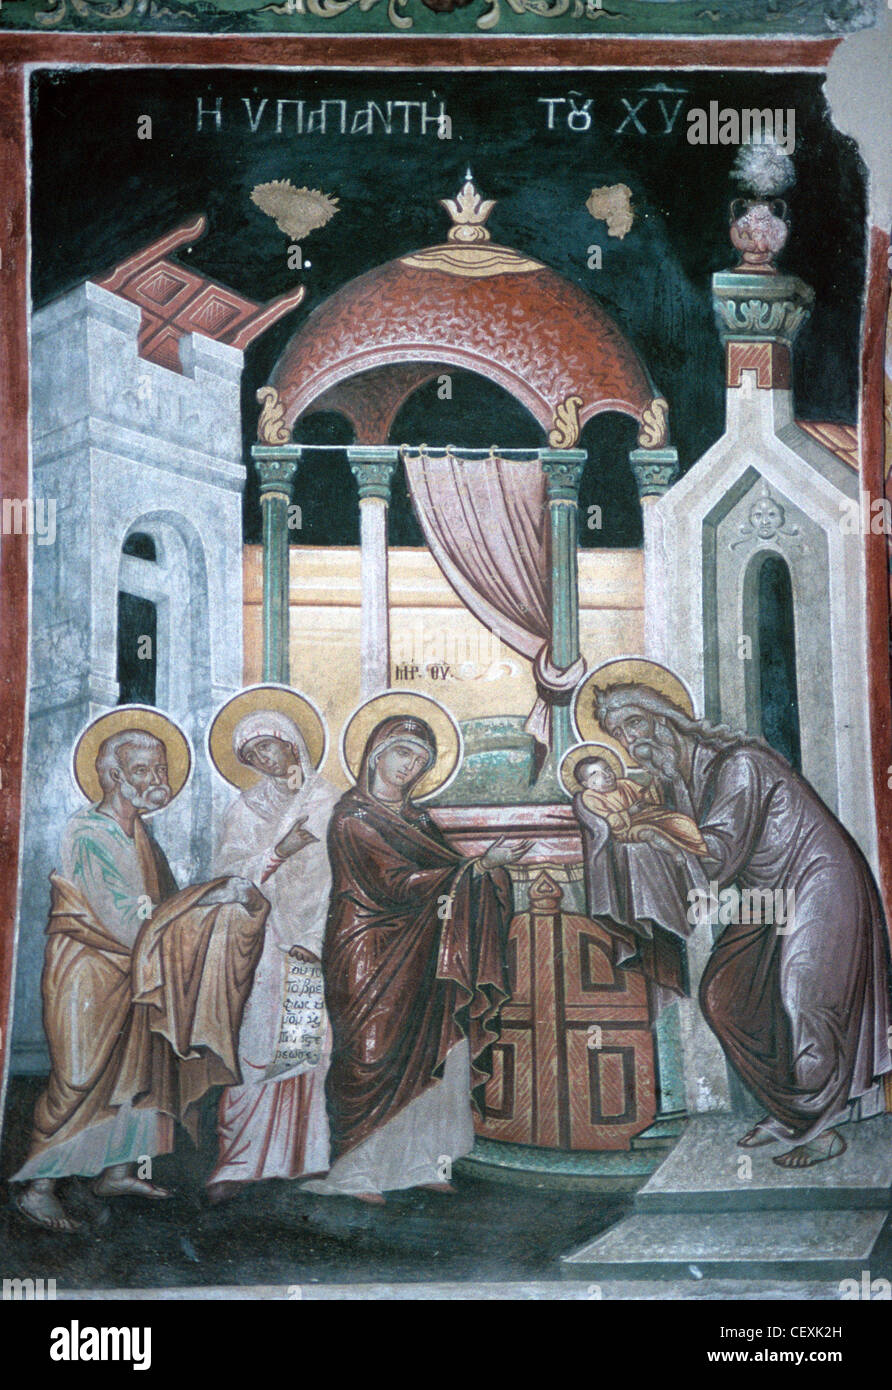 La Presentación de Cristo, c18th fresco o Pintura mural, Santo Monasterio de Kaisariani o Monasterio de Kessariani, Atenas, Grecia Foto de stock